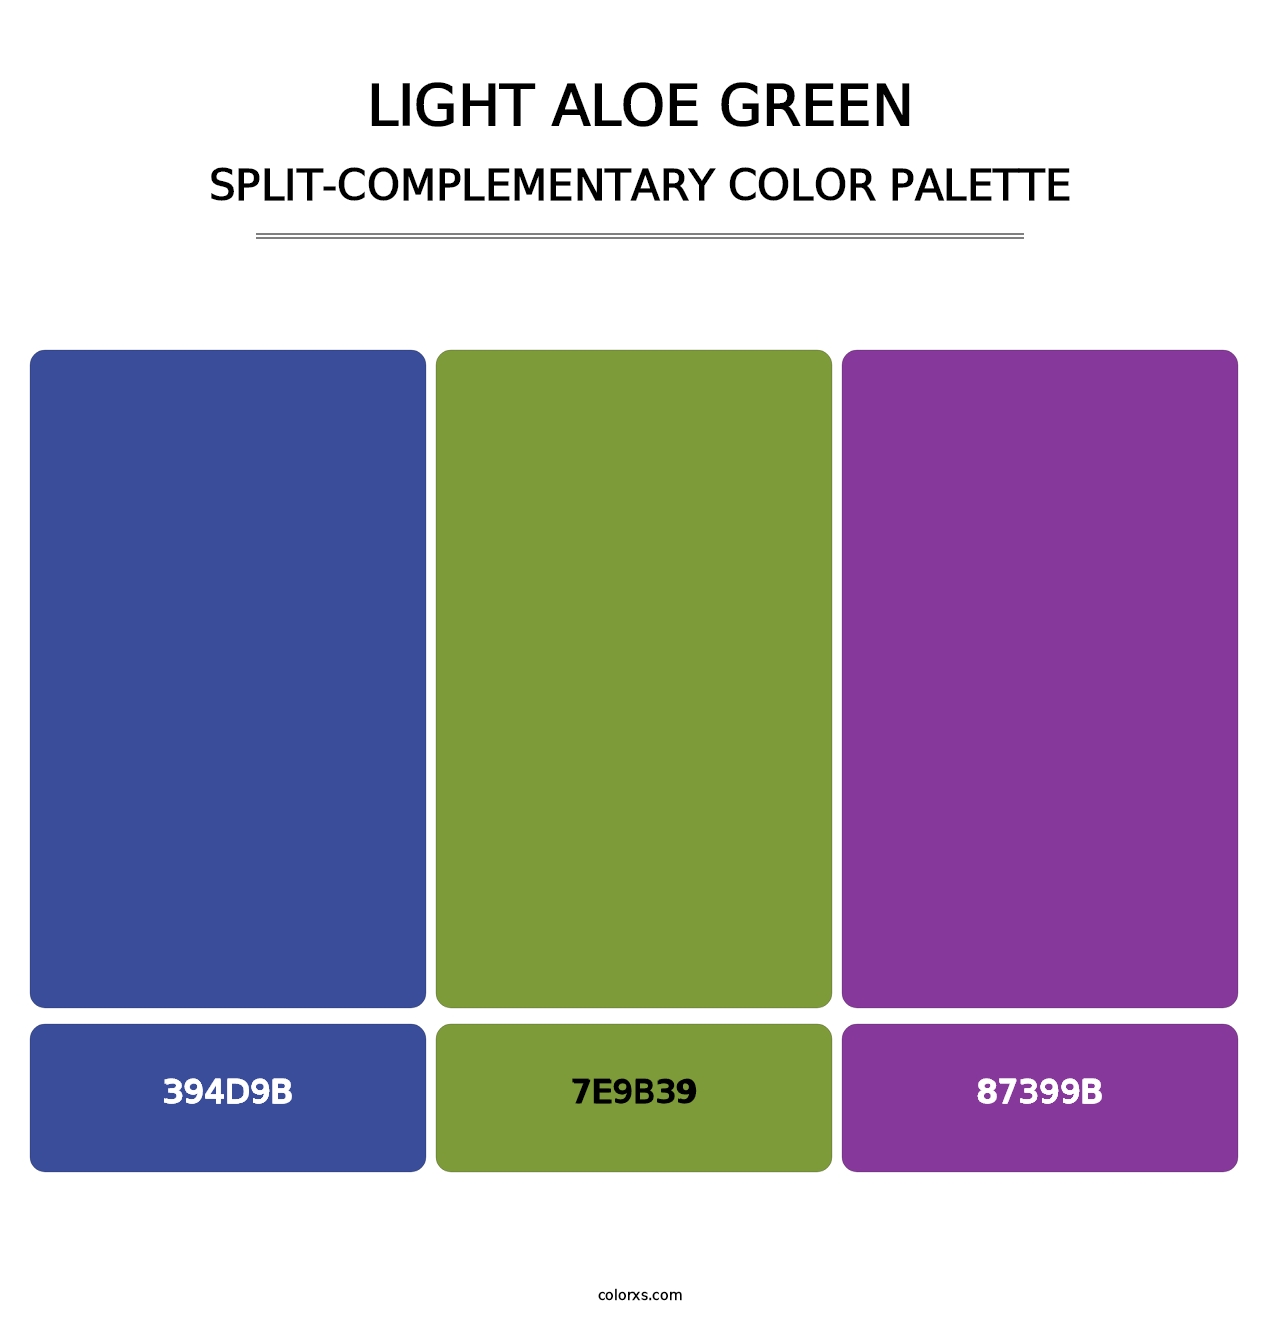 Light Aloe Green - Split-Complementary Color Palette